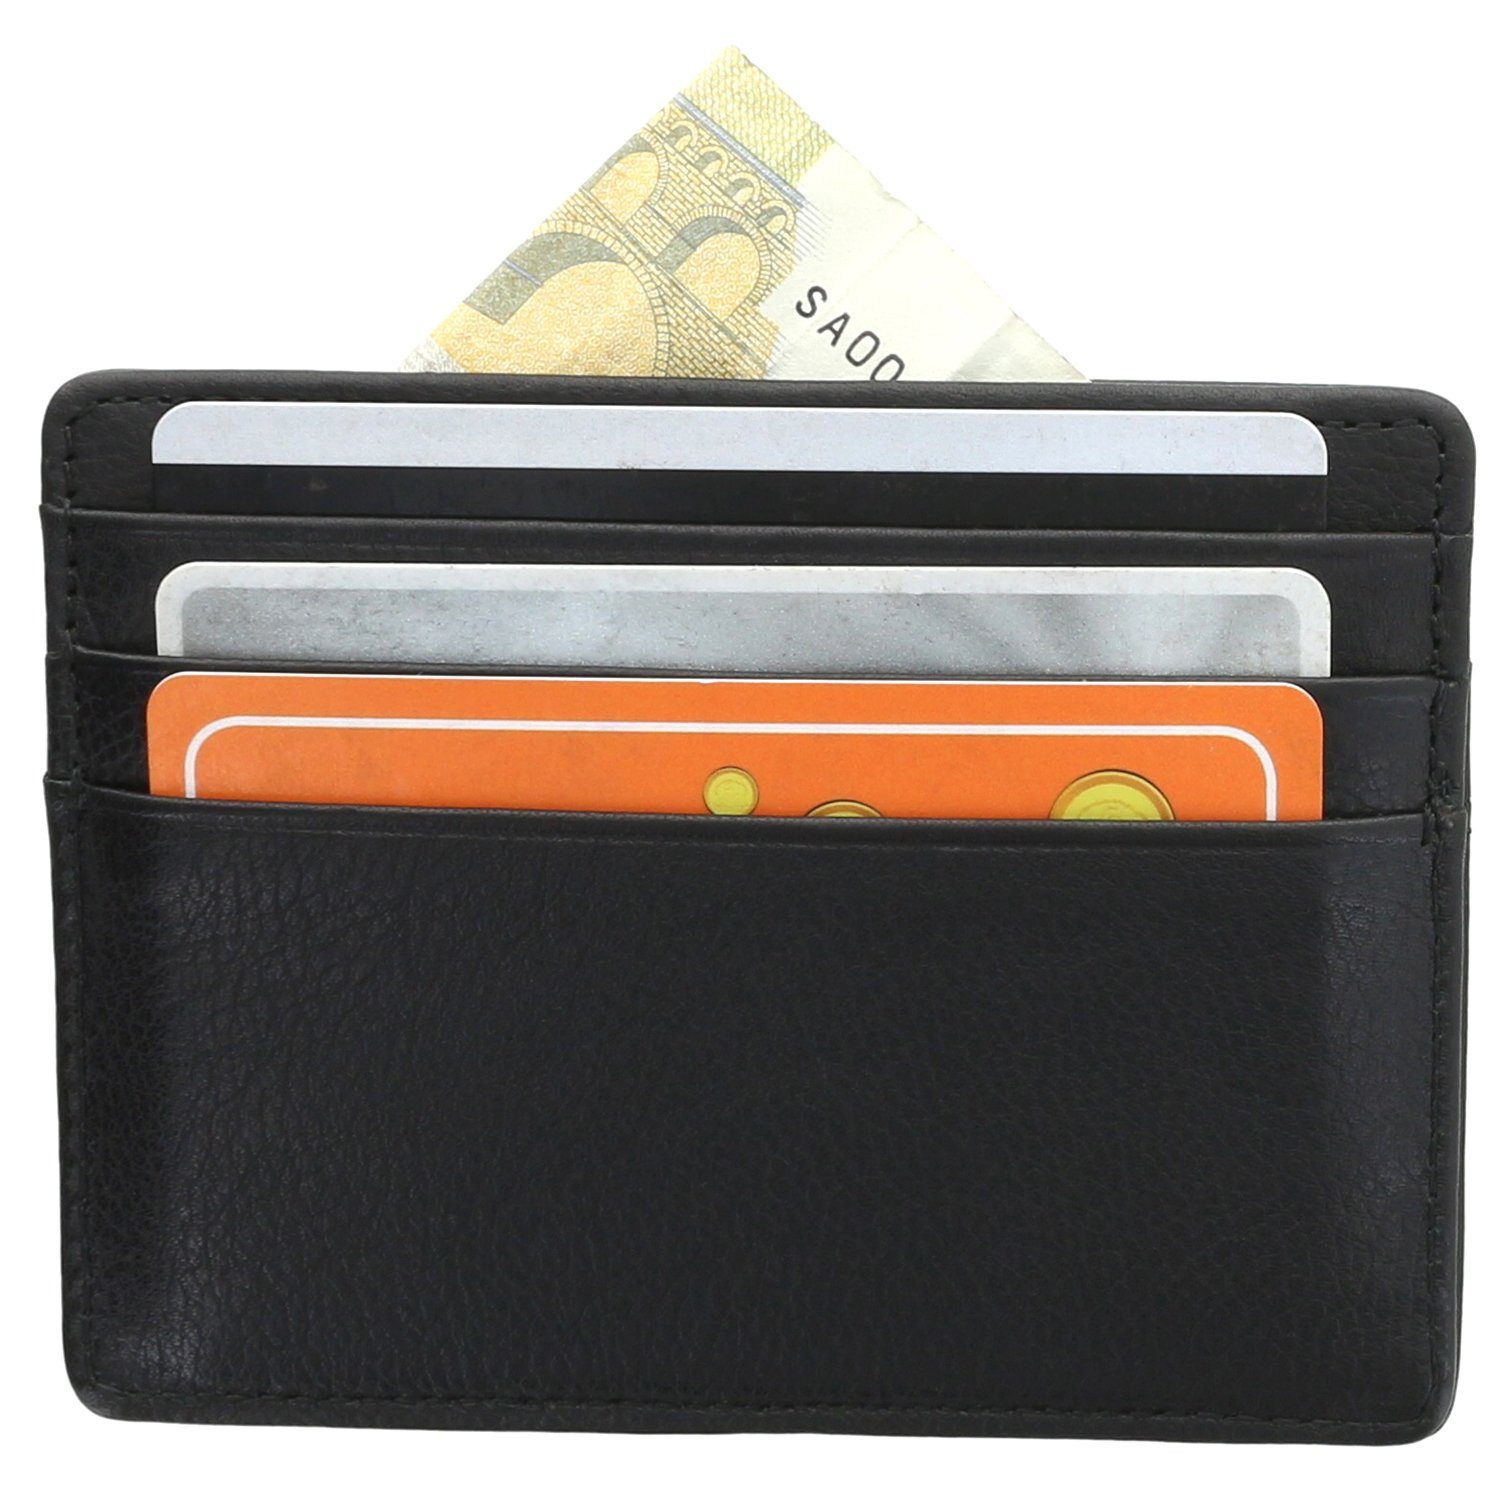 XiRRiX Kartenetui Kreditkarten Etui Herren und Damen Mini Wallet, aus echtem Rindsleder